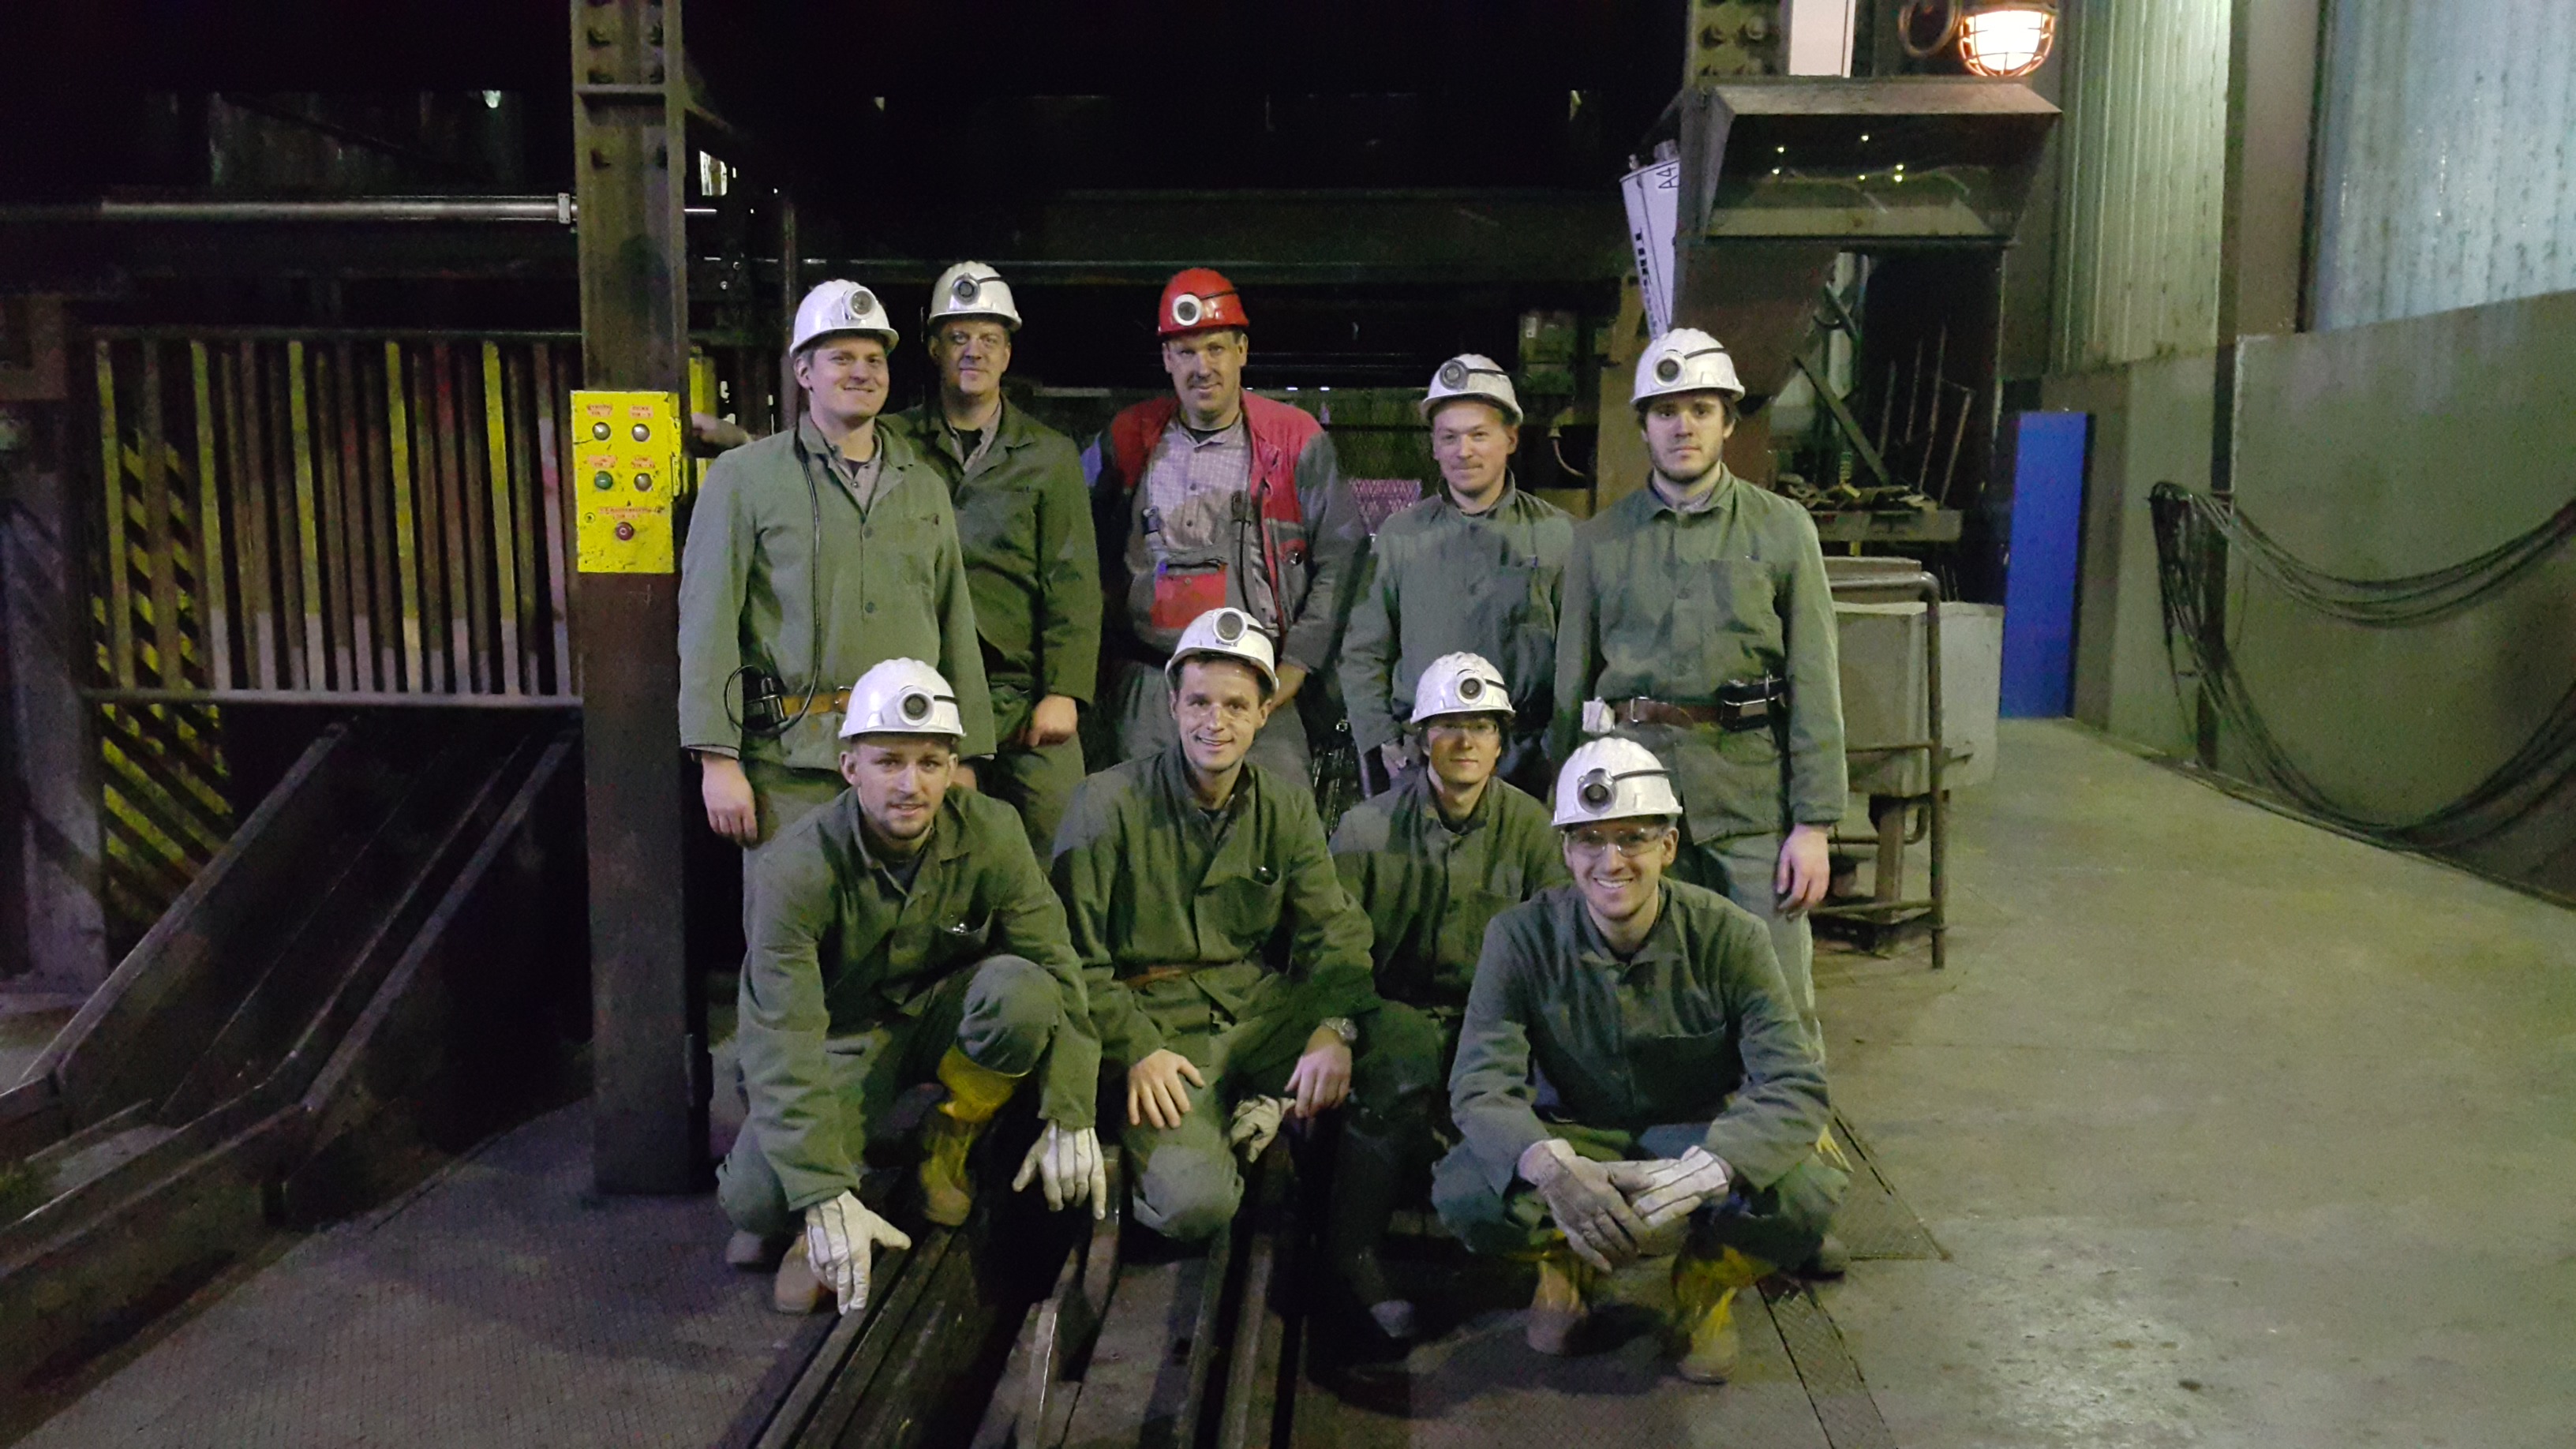 Strokovna ekskurzija v Premogovniku Velenje